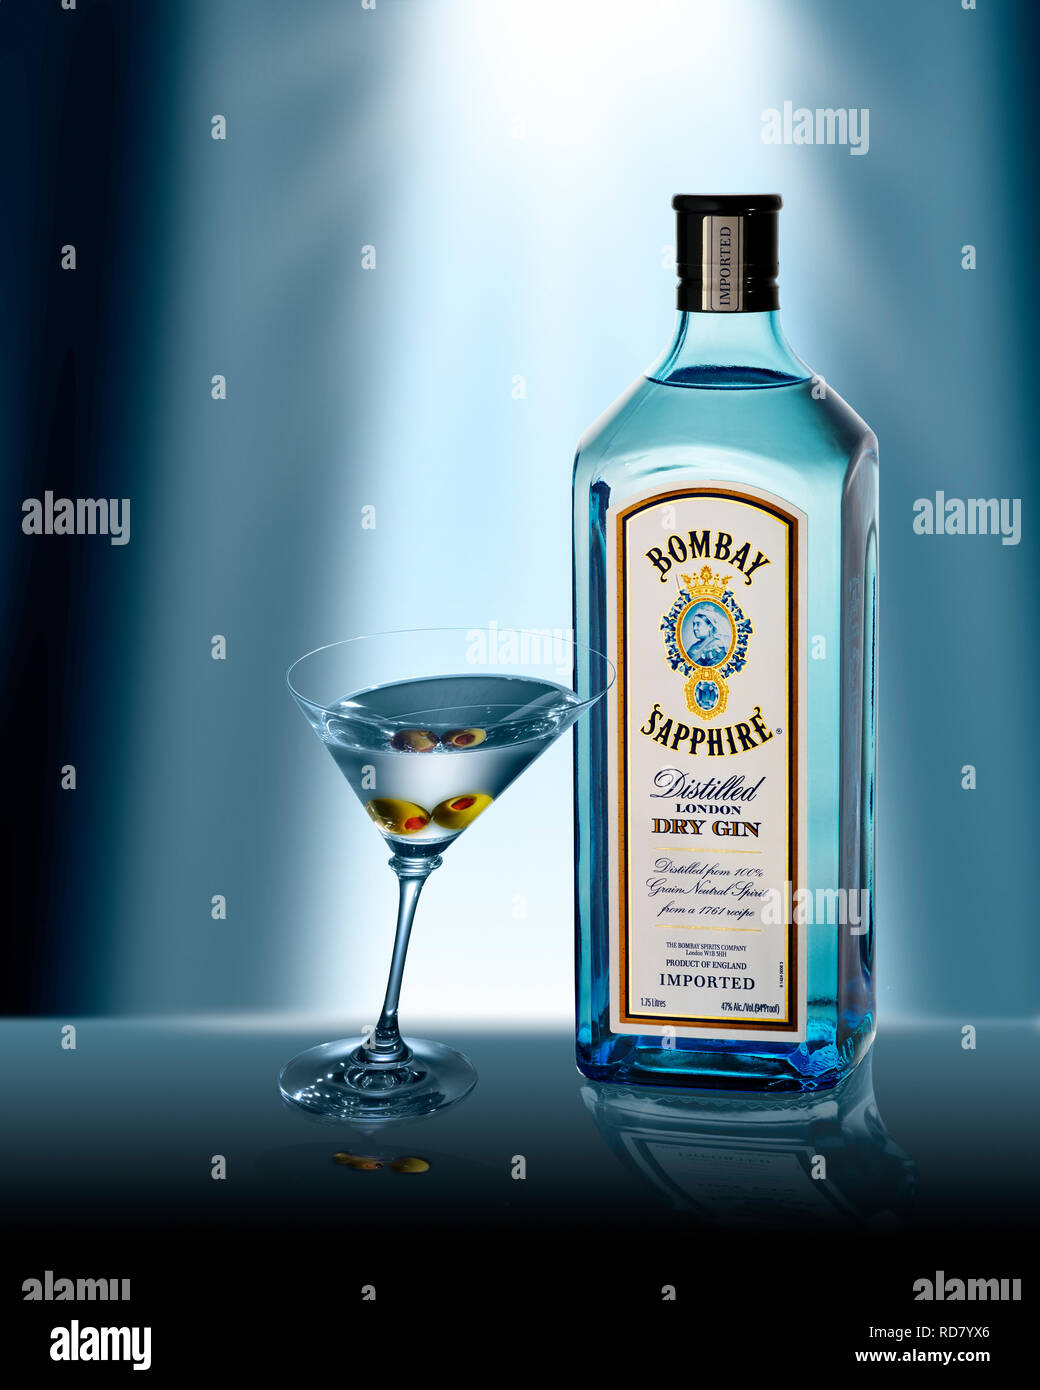 Botella de Bombay Sapphire gin y copa de martini, Foto de estudio Foto de stock